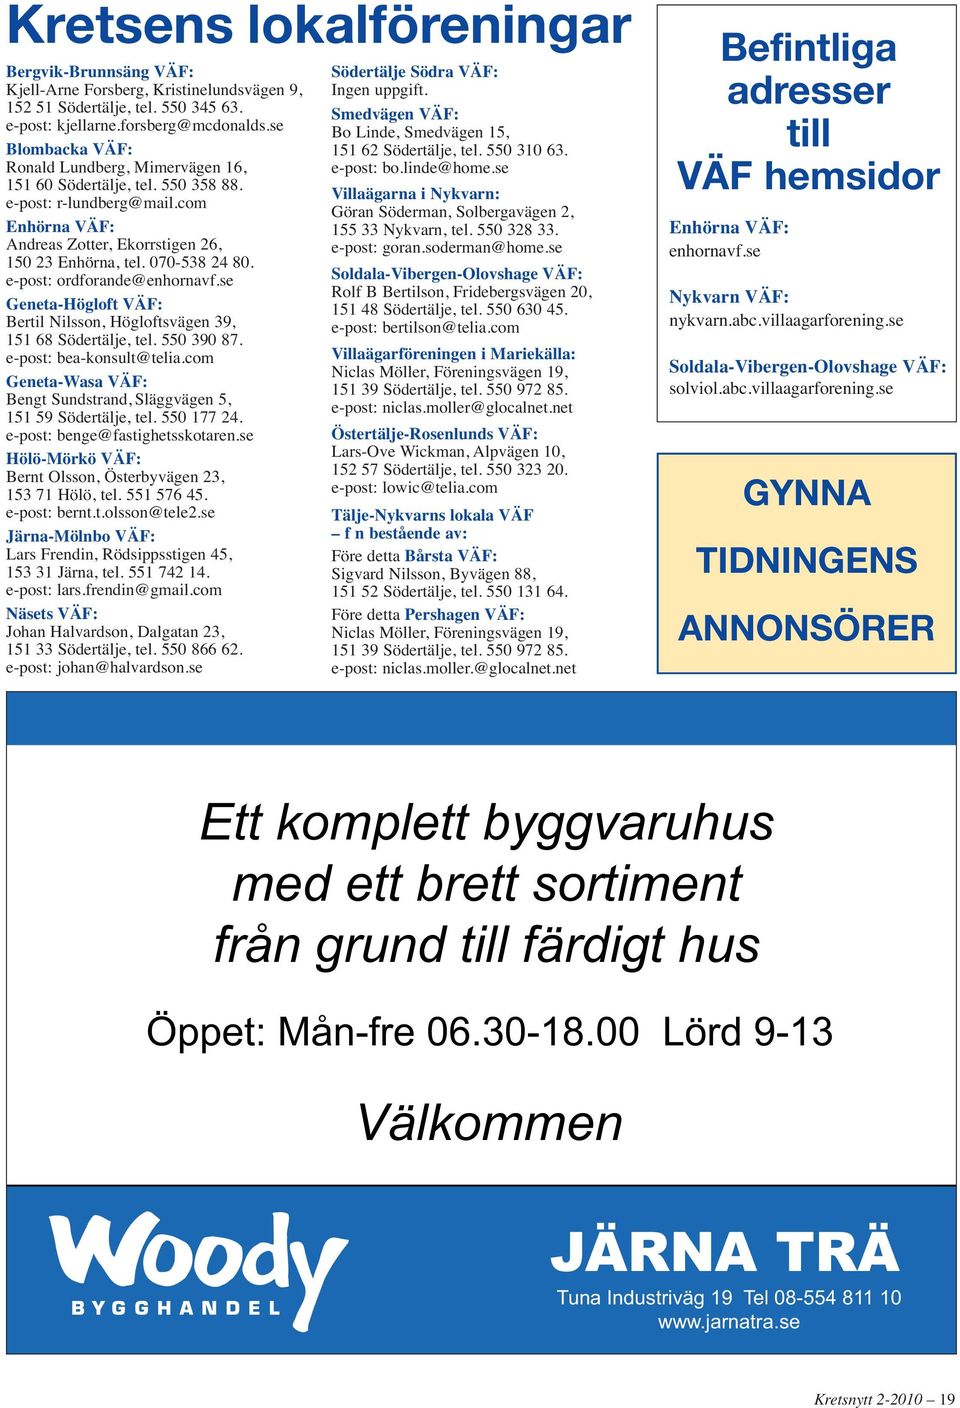 e-post: ordforande@enhornavf.se Geneta-Högloft VÄF: Bertil Nilsson, Högloftsvägen 39, 151 68 Södertälje, tel. 550 390 87. e-post: bea-konsult@telia.